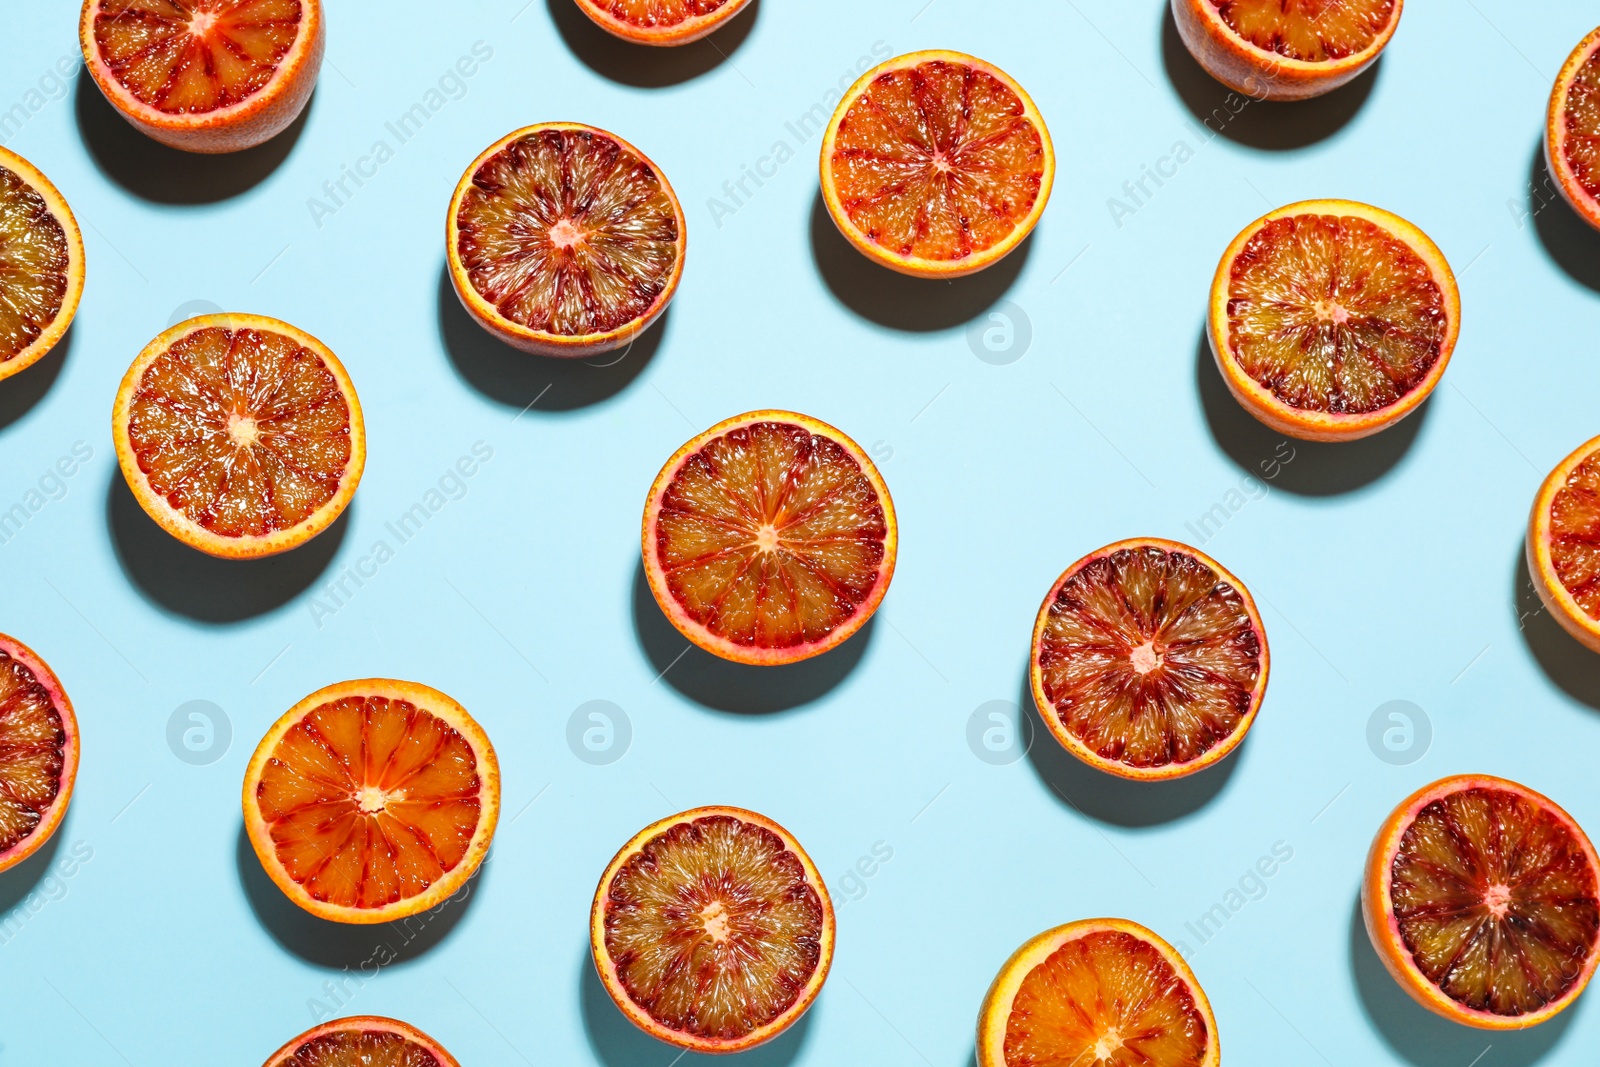 Photo of Many ripe sicilian oranges on light blue background, flat lay